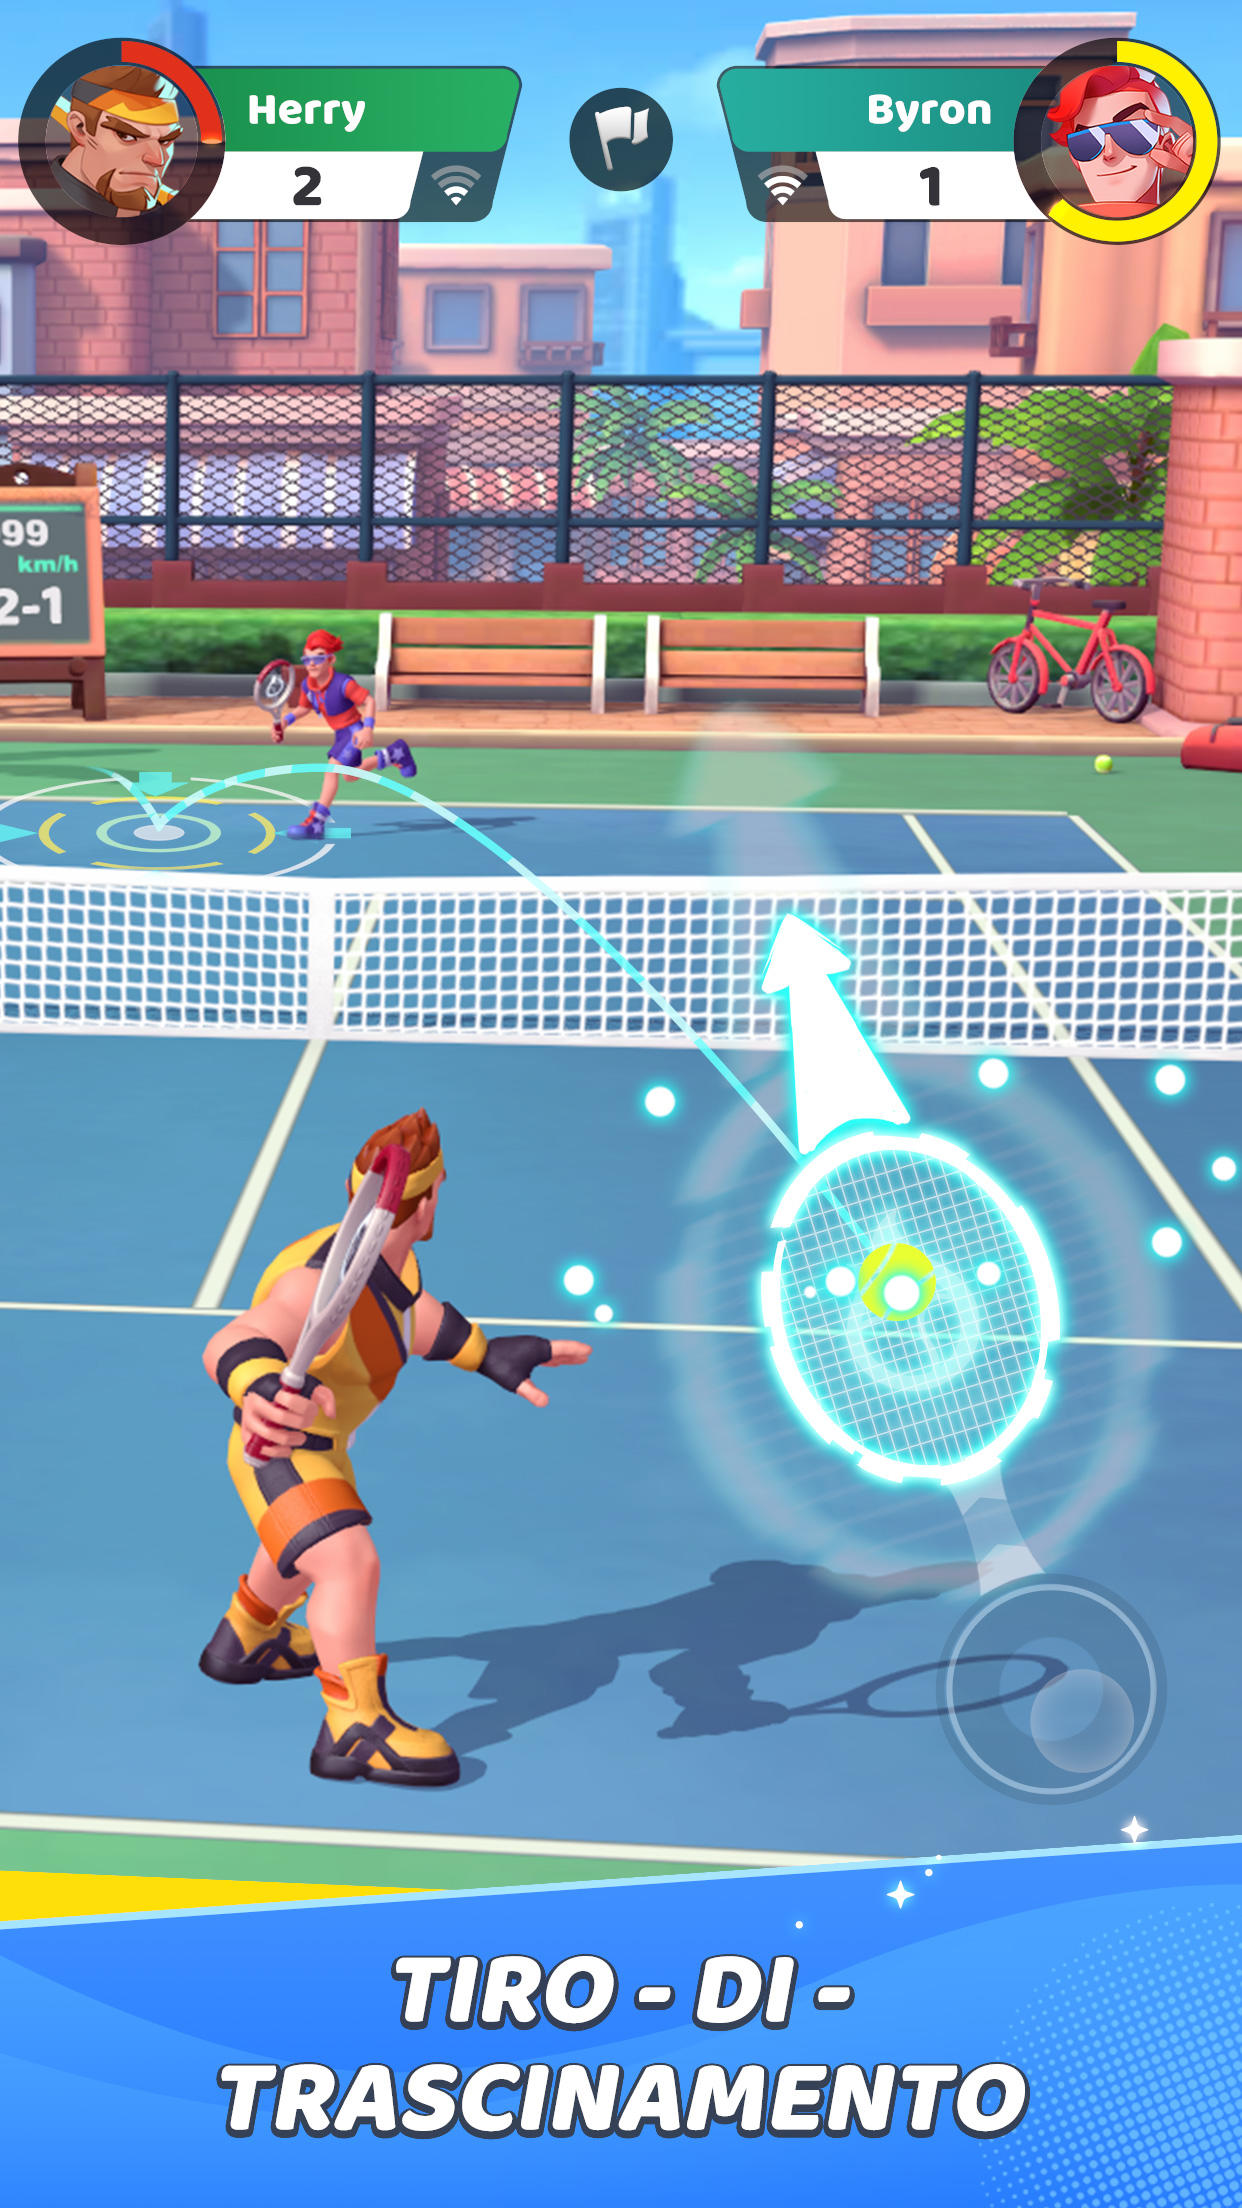 Screenshot 1 of Tennis estremos™ 2.54.0